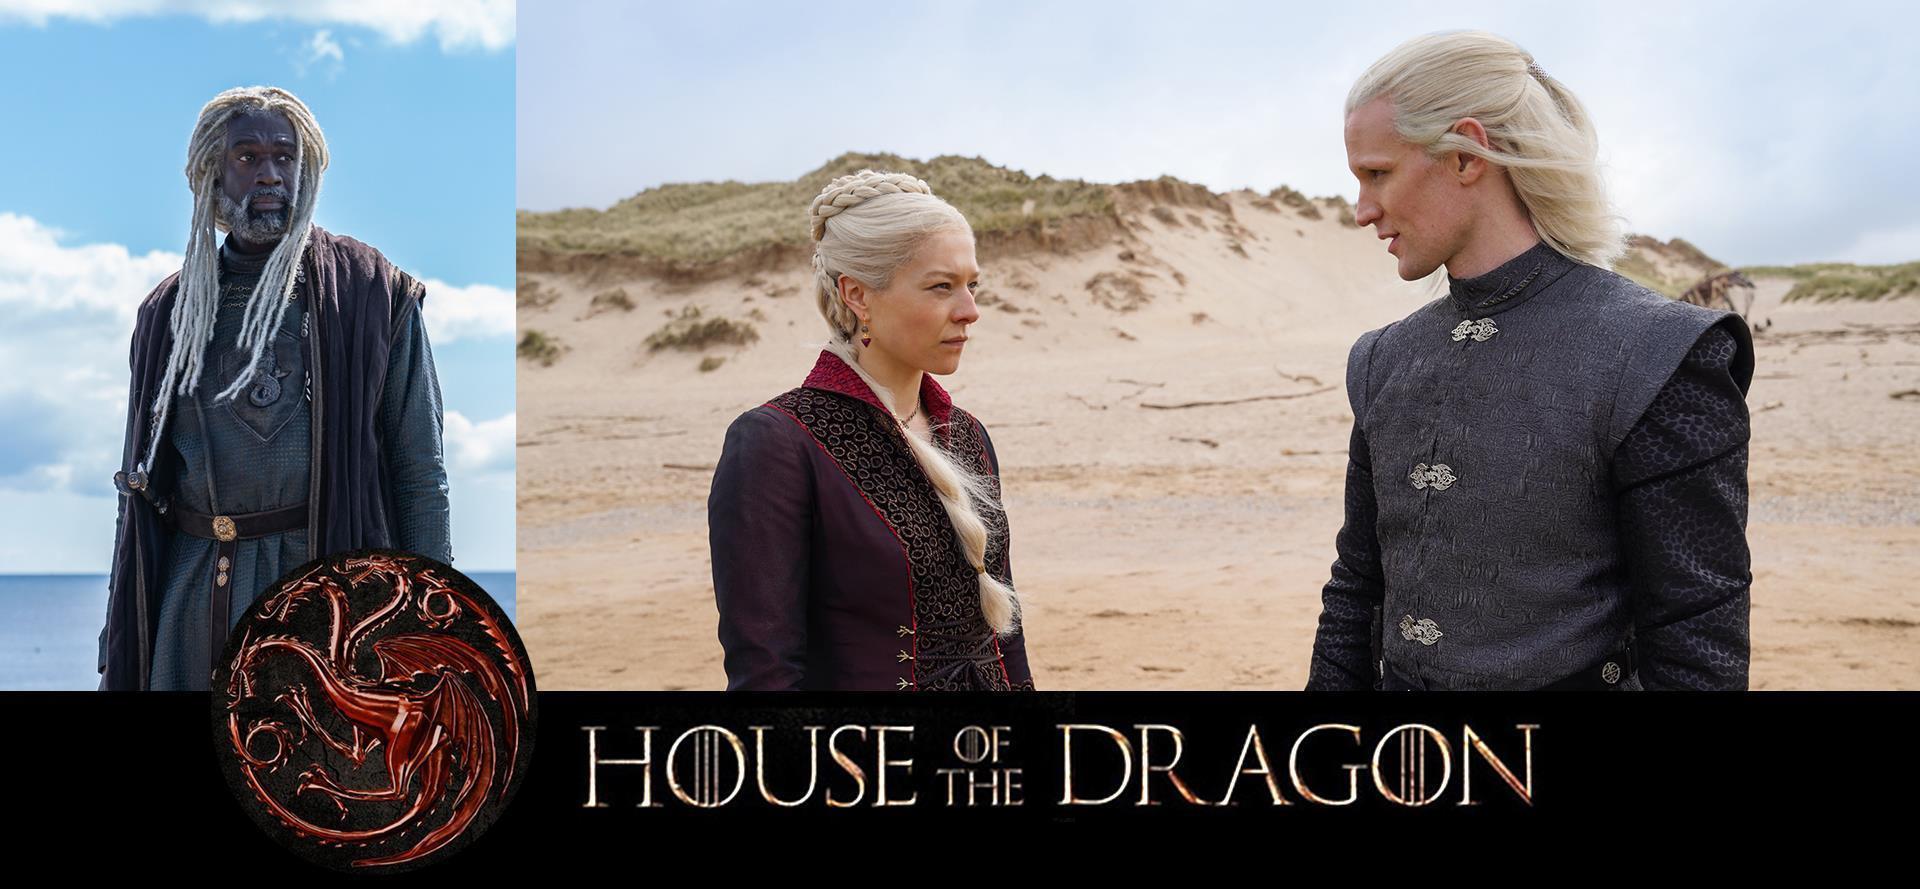 A legfontosabb tudnivalók a House of the Dragon HBO-sorozatról